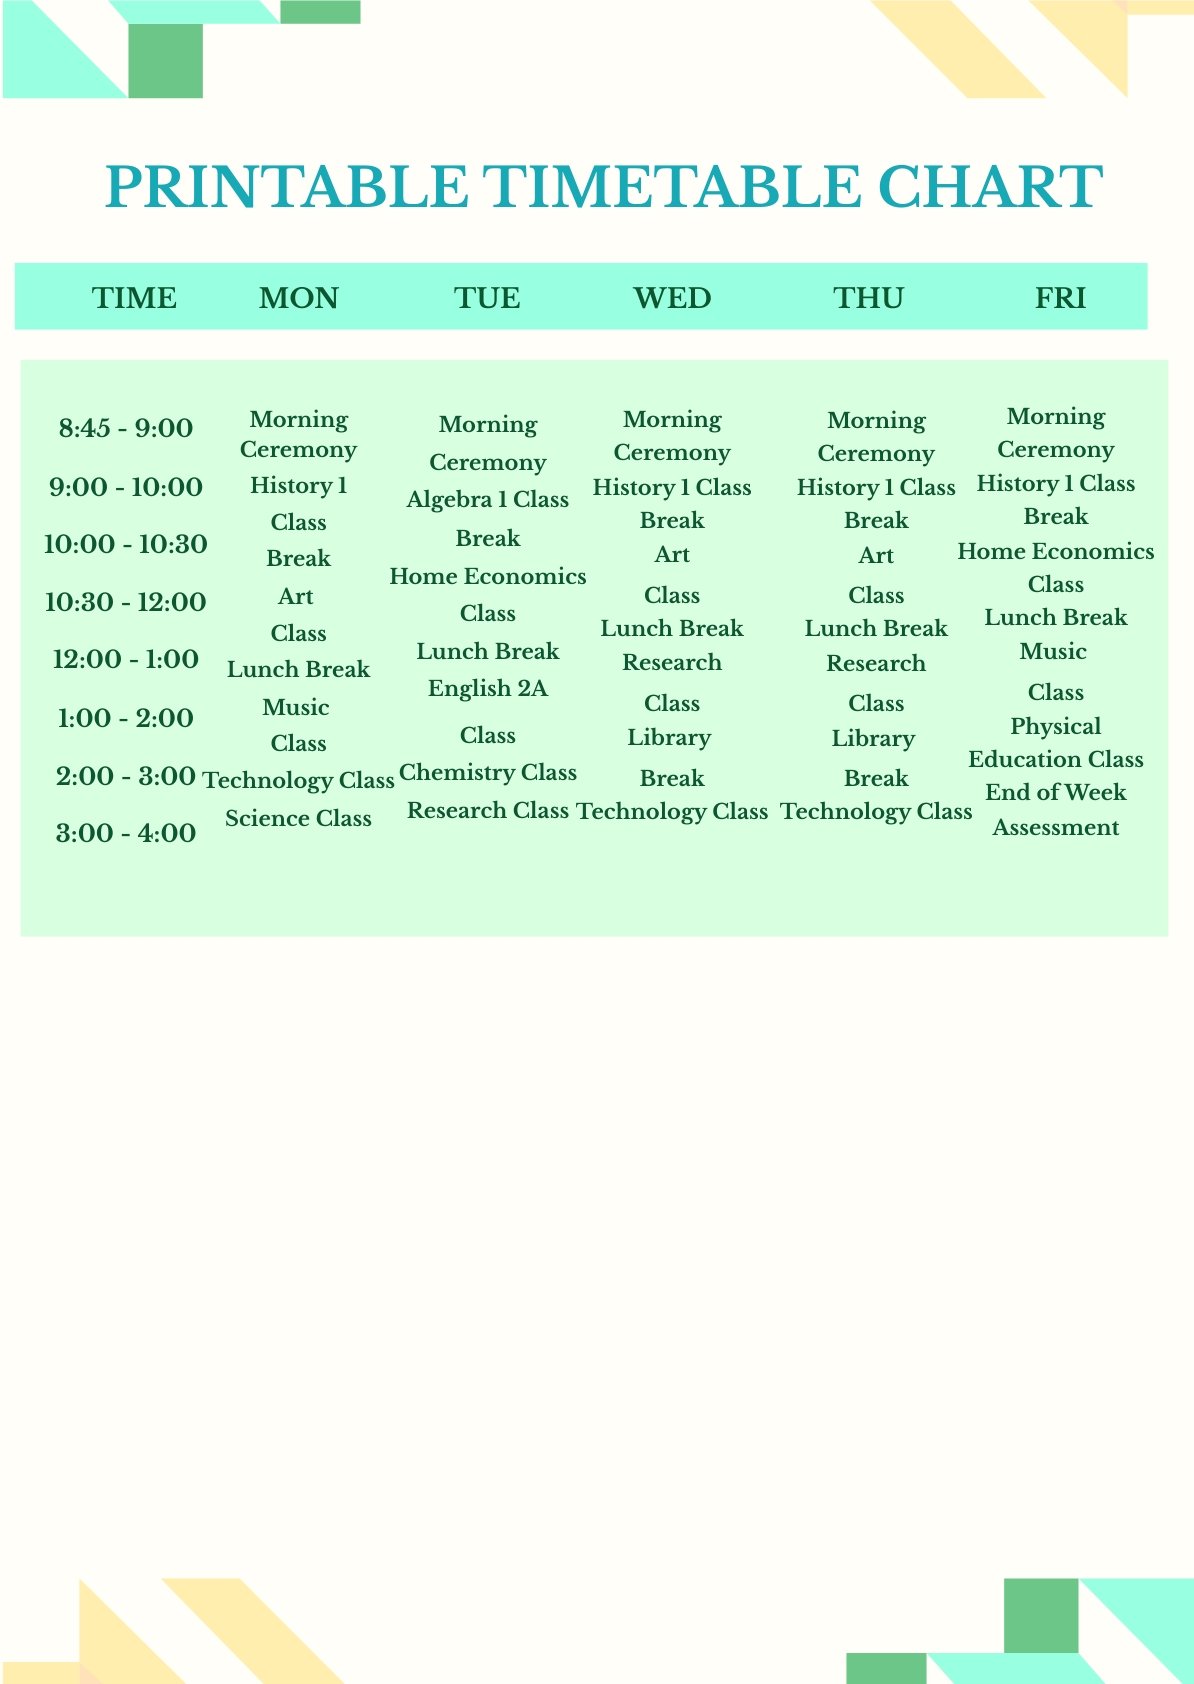 Printable Timetable Chart Template